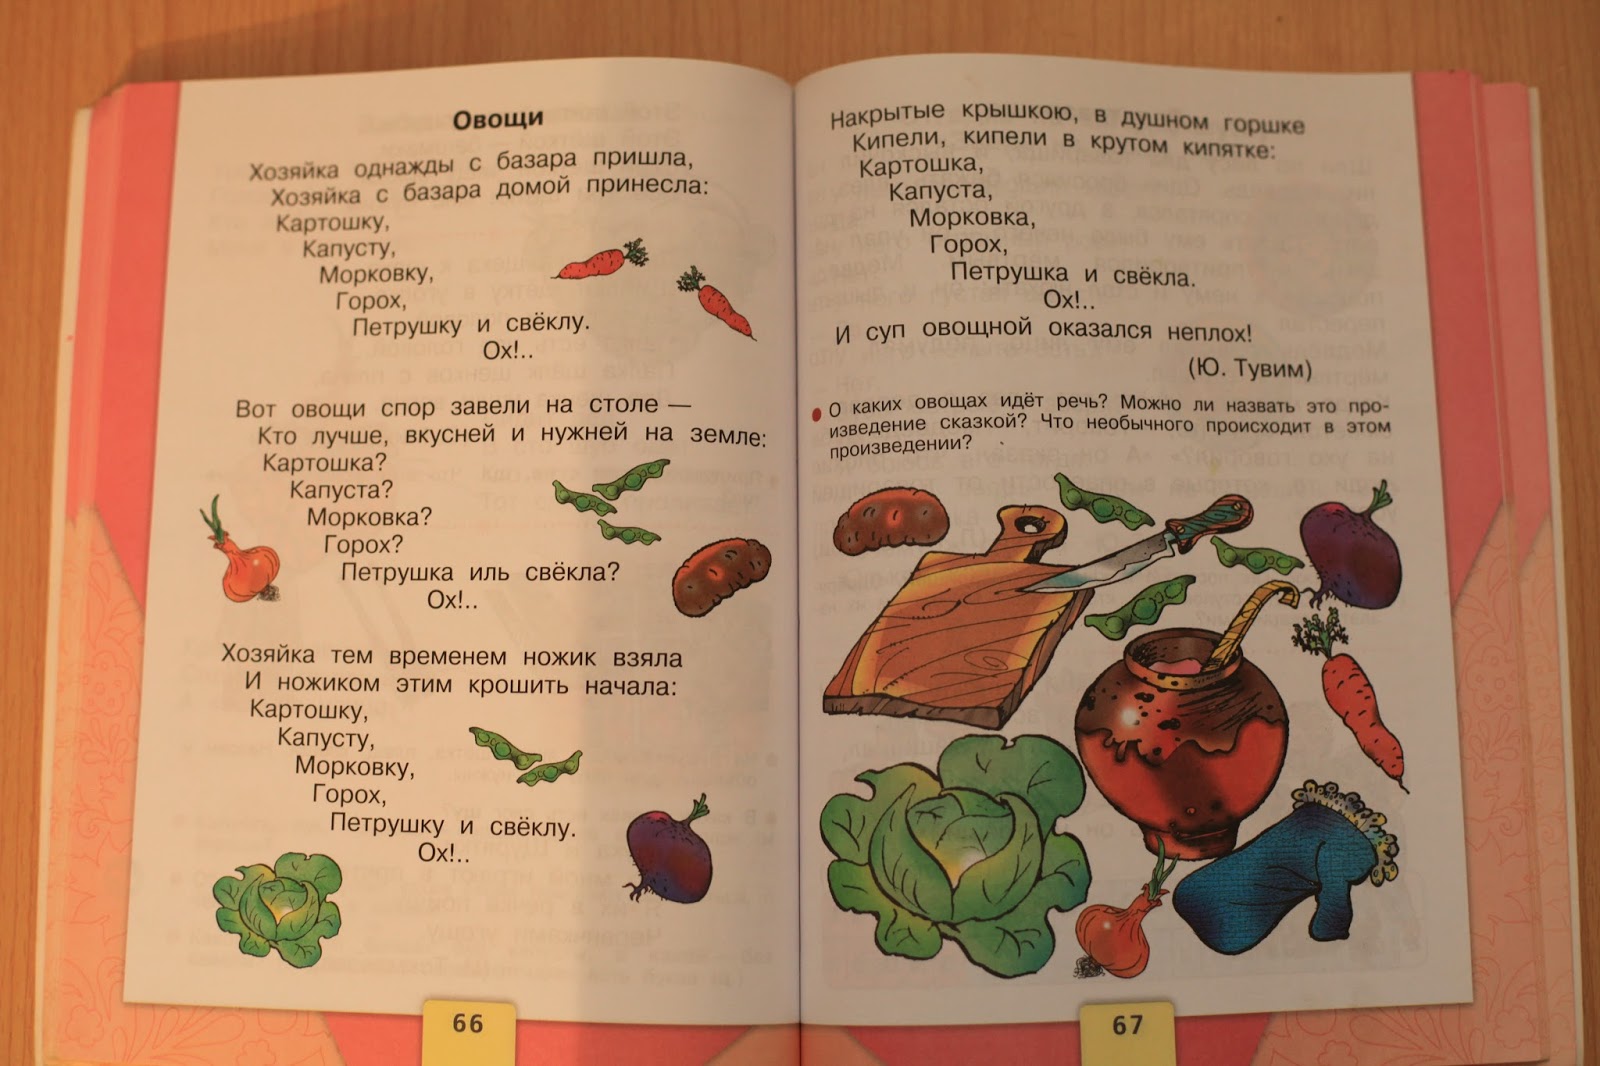 Овощи кипели. Тувим овощи. Чтение Тувим овощи. Стихотворение Тувима овощи.